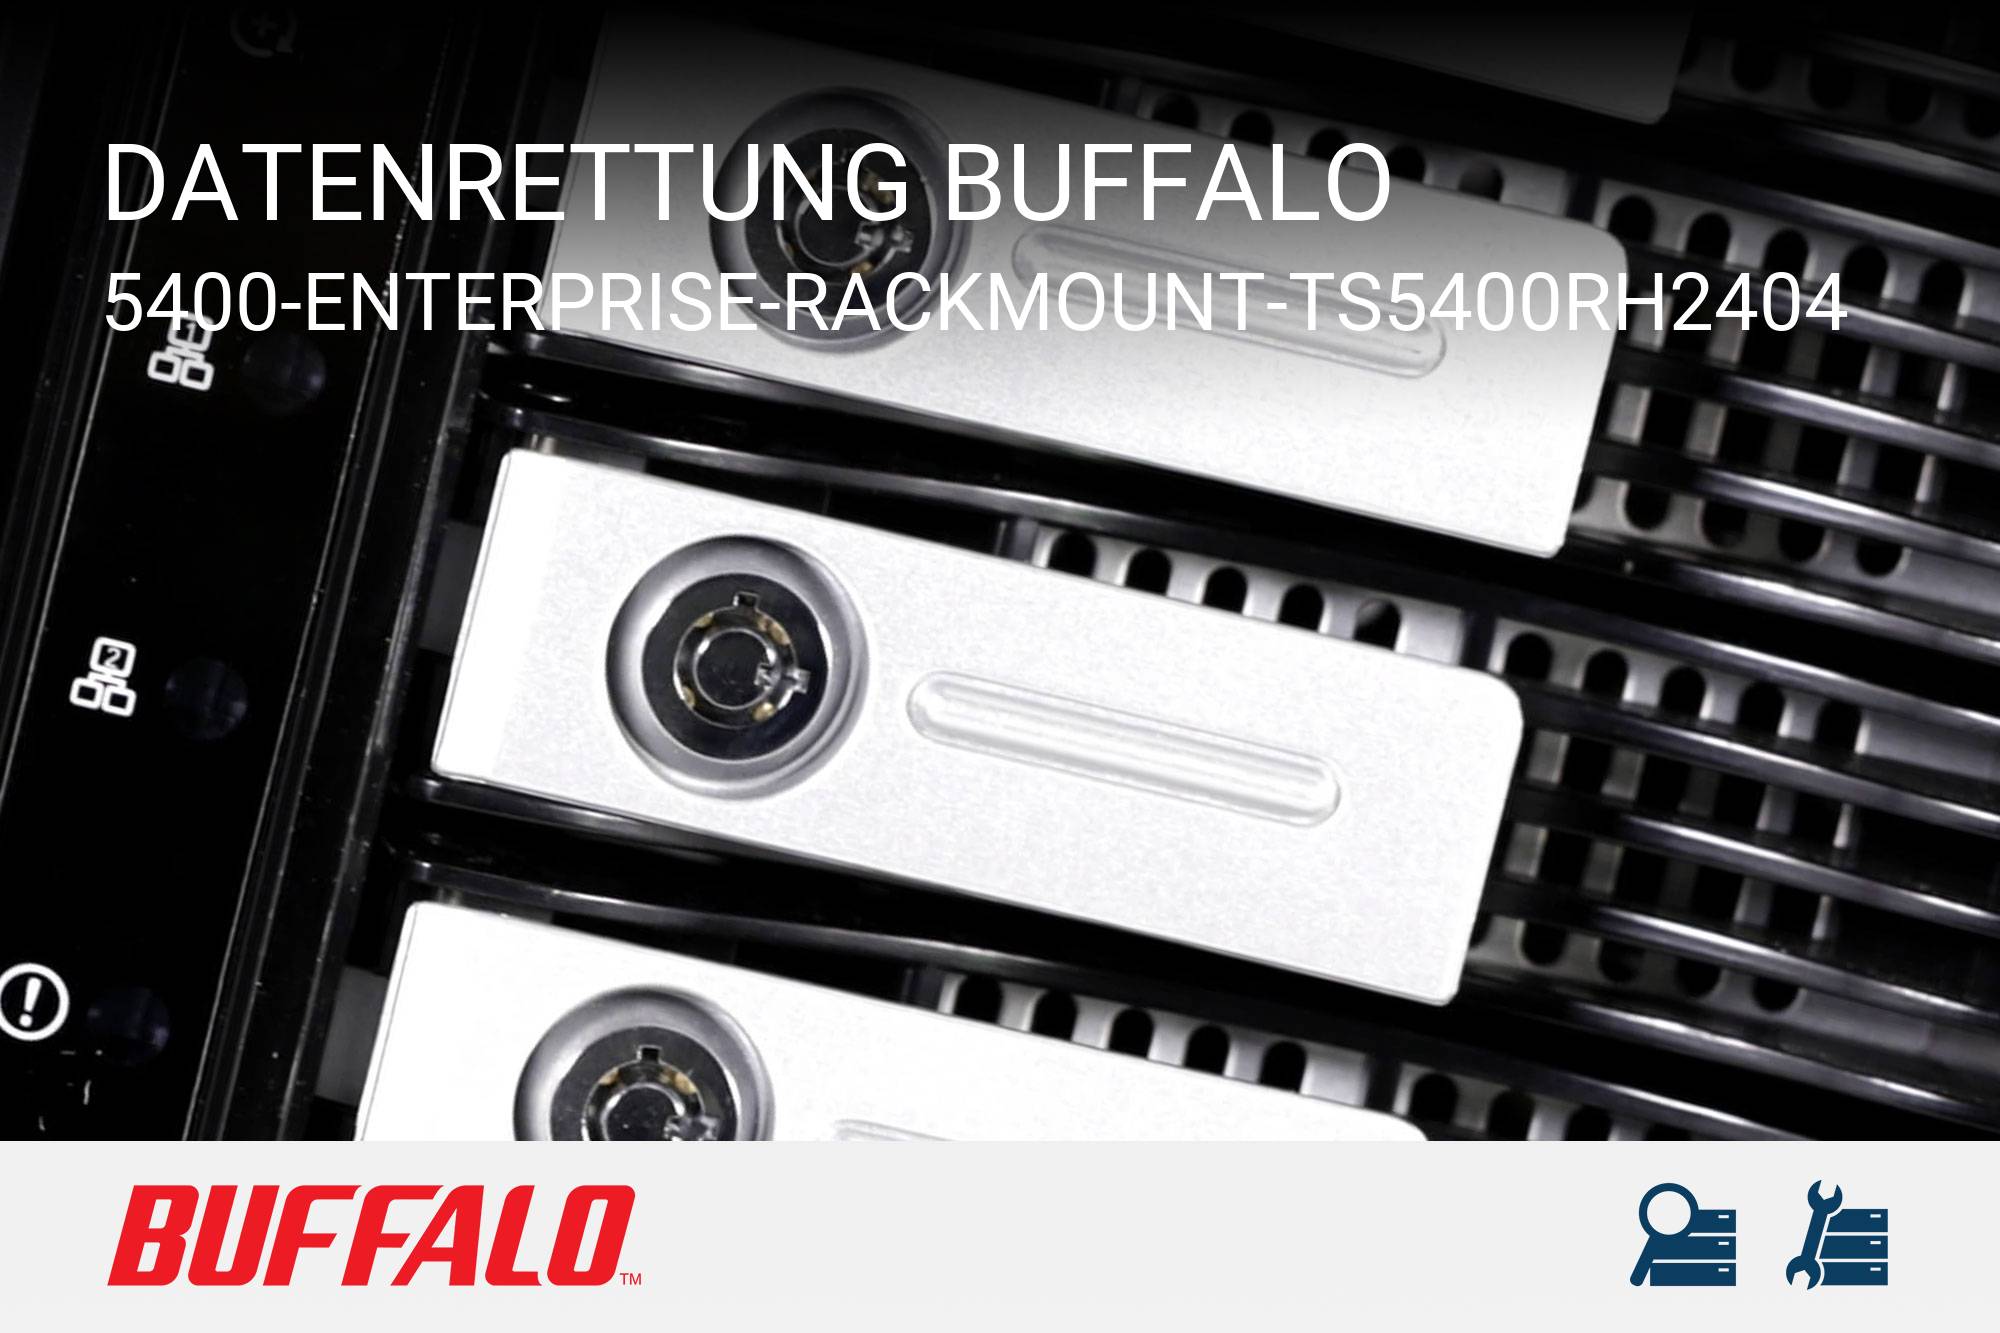 Buffalo 5400-Enterprise-Rackmount-TS5400RH2404